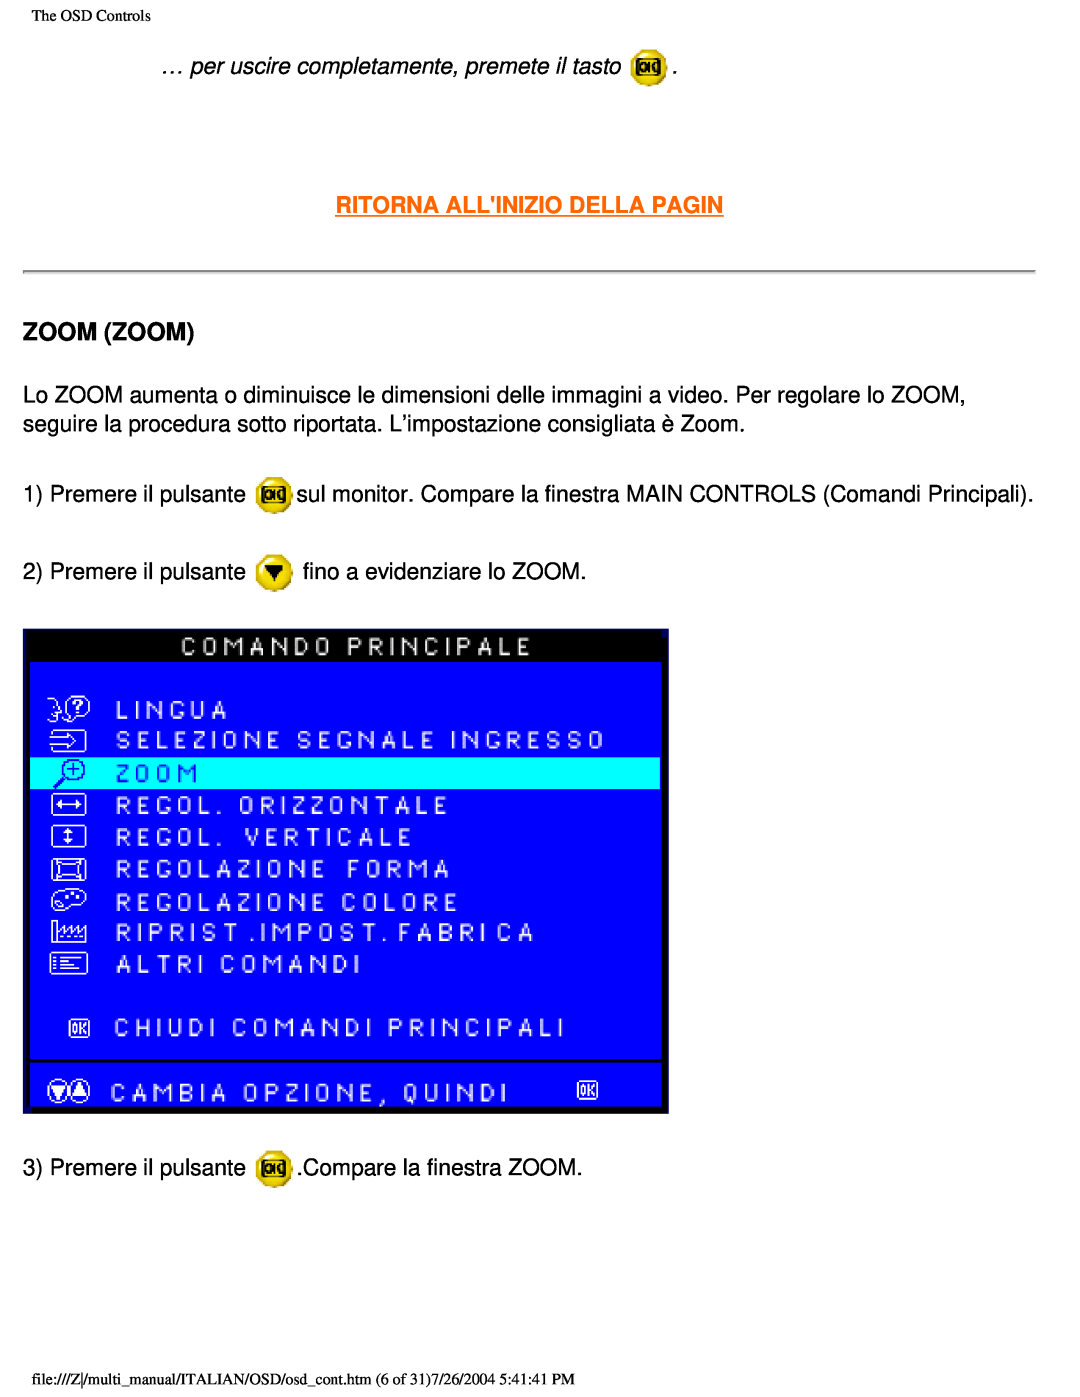 Philips 201B user manual Zoom Zoom, … per uscire completamente, premete il tasto, Ritorna Allinizio Della Pagin 